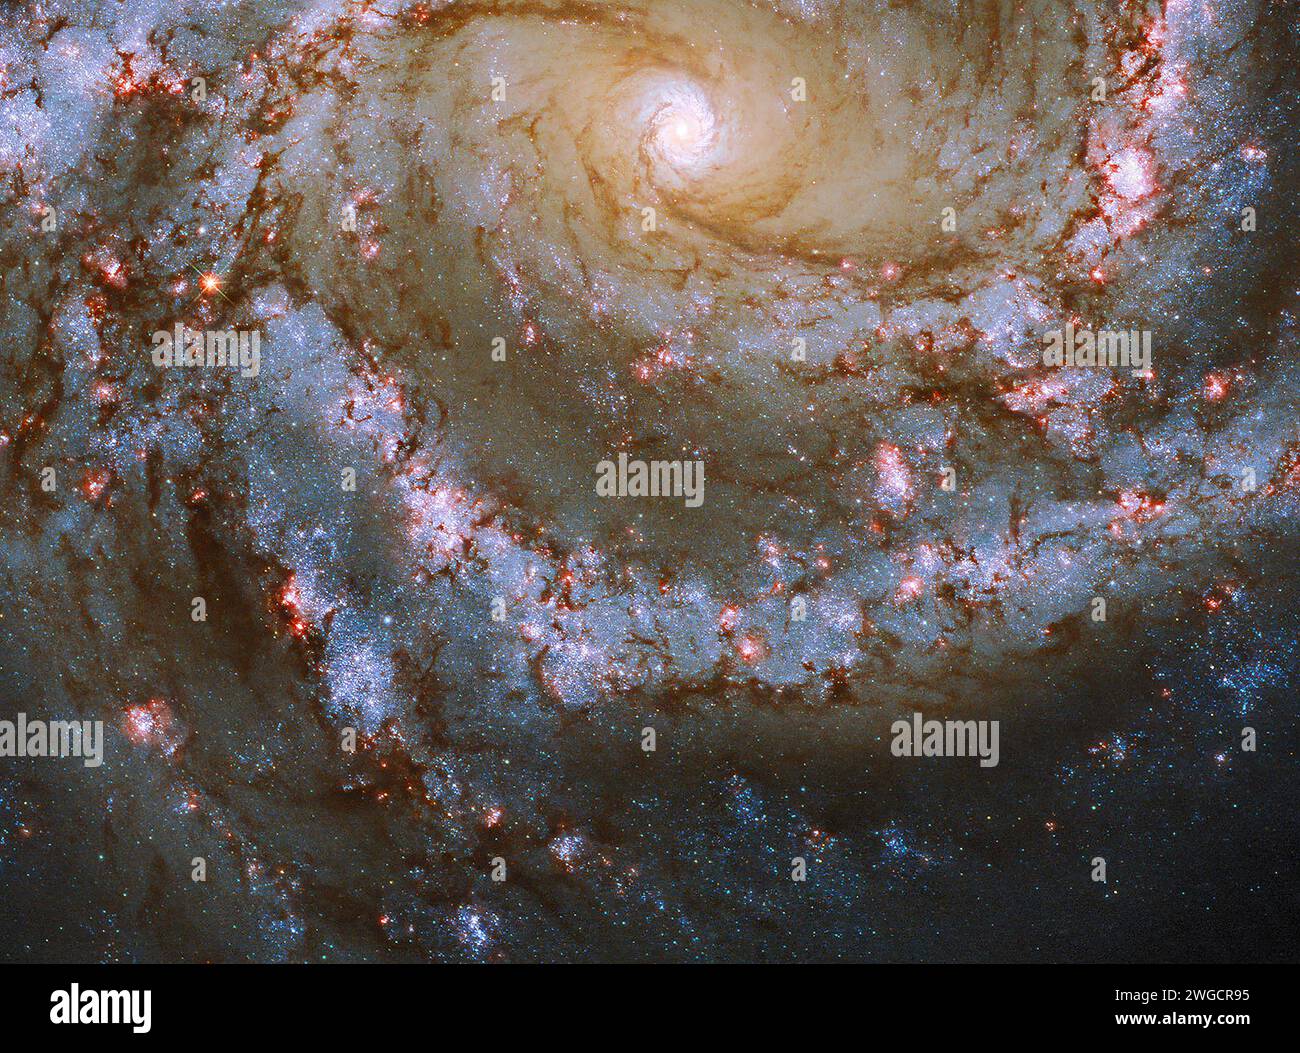 Spiralgalaxie, NGC 4303. Leuchtend blaue, rosa und rote galaktische Aufnahmen mit großer Reichweite. Elemente dieses Bildes, das von der NASA bereitgestellt wurde (beobachtet von Stockfoto